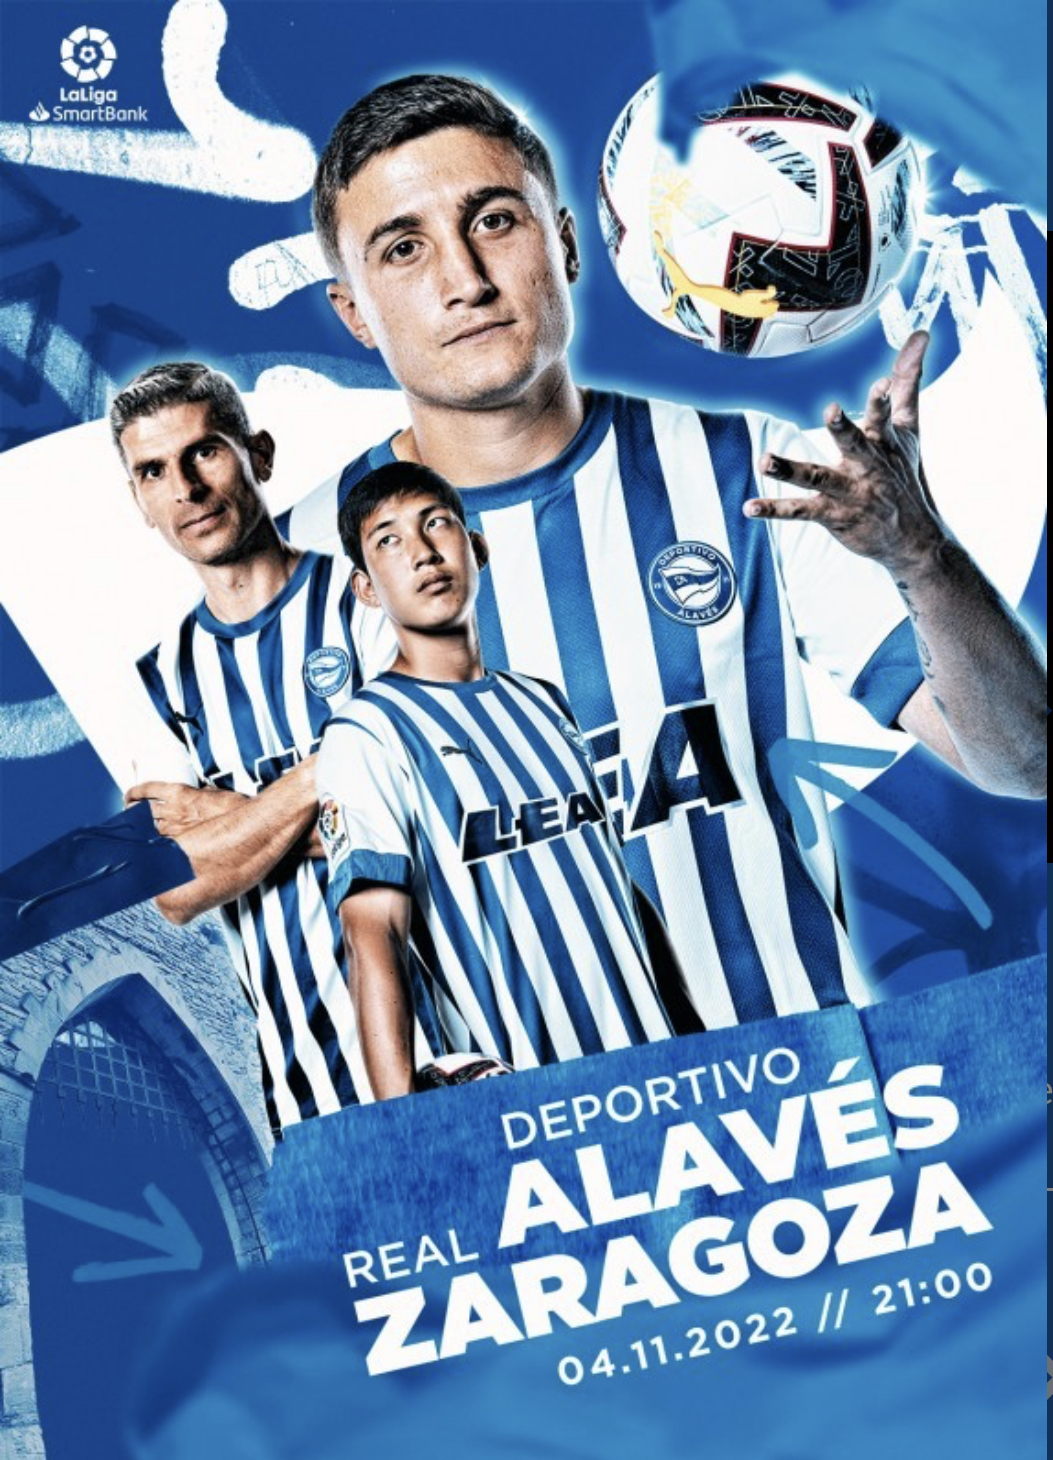 Equipo premiado con dos entradas para presenciar en directo el encuentro de Liga 123, DeportIvo Alavés-Real Zaragoza.